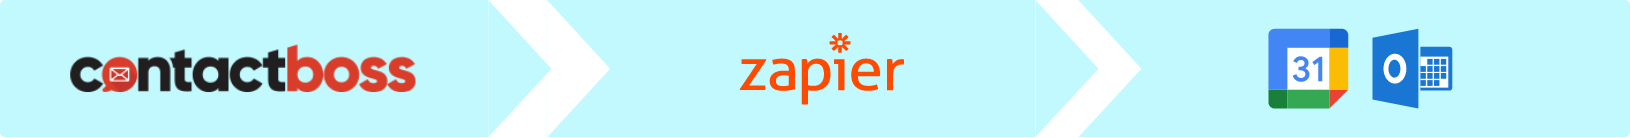 Contact Boss Zapier Integration